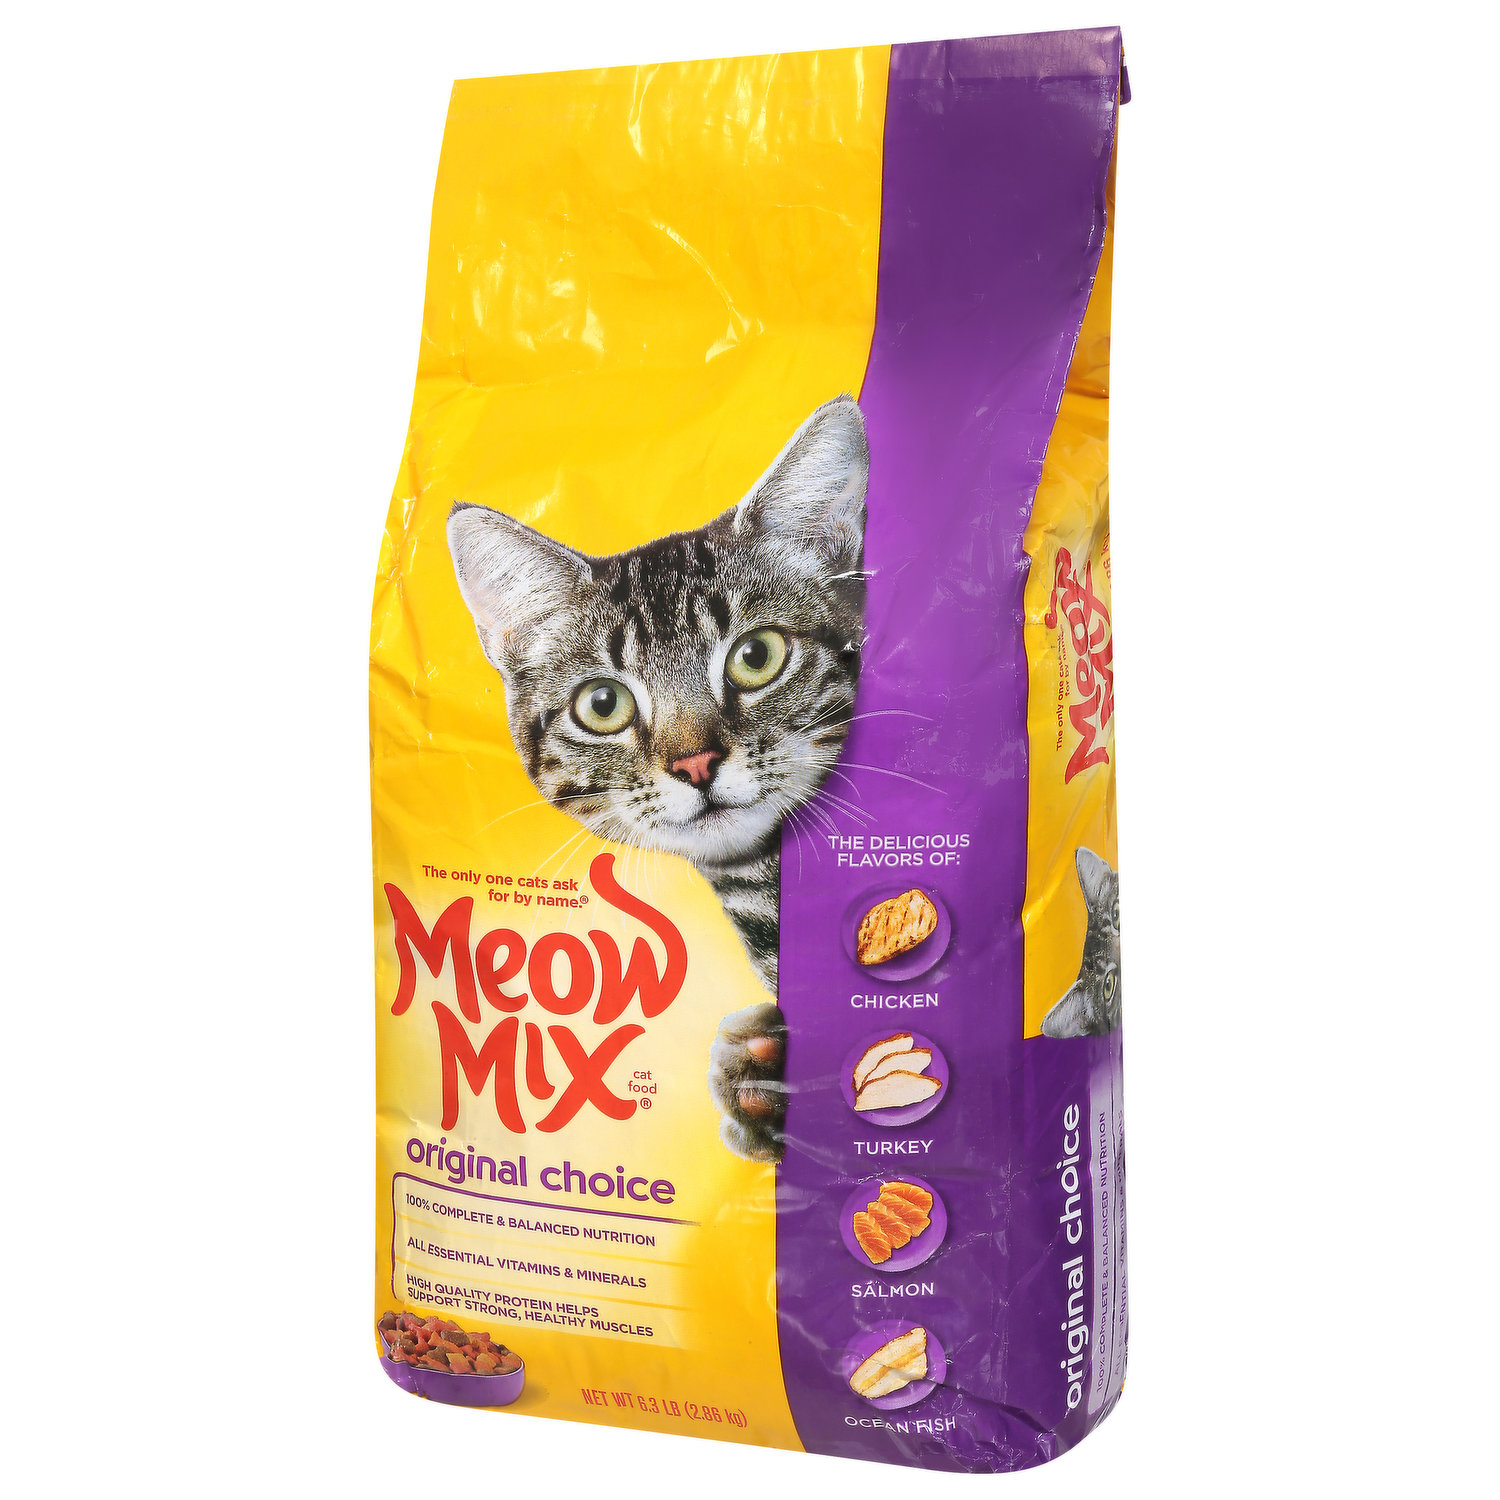 Meow Mix Cat Food, Original Choice